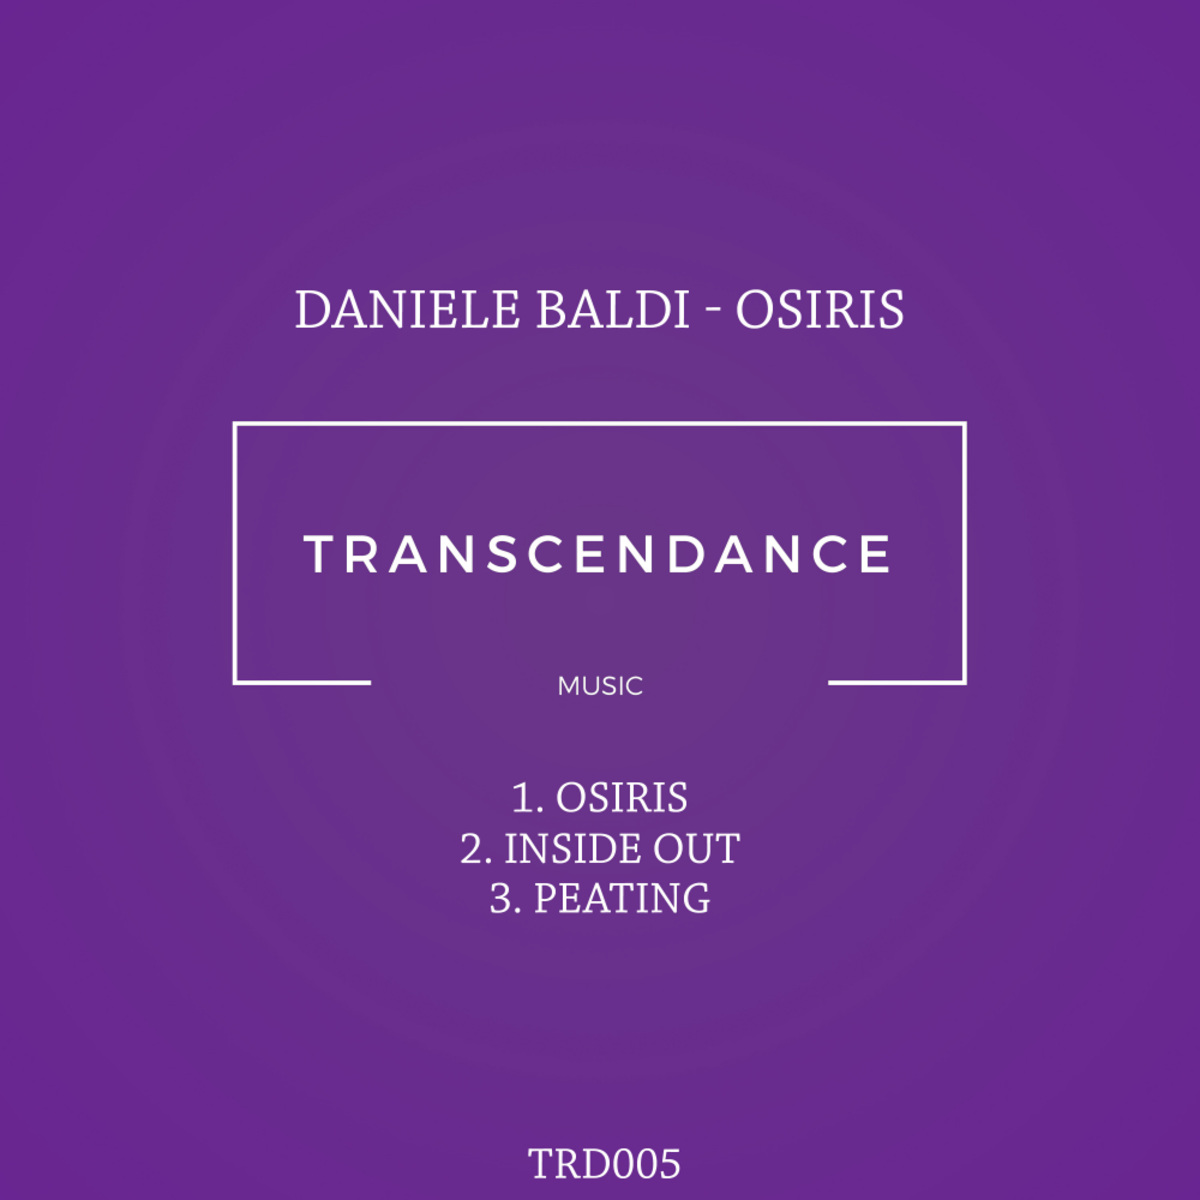 Daniele Baldi - Osiris / Transcendance Music